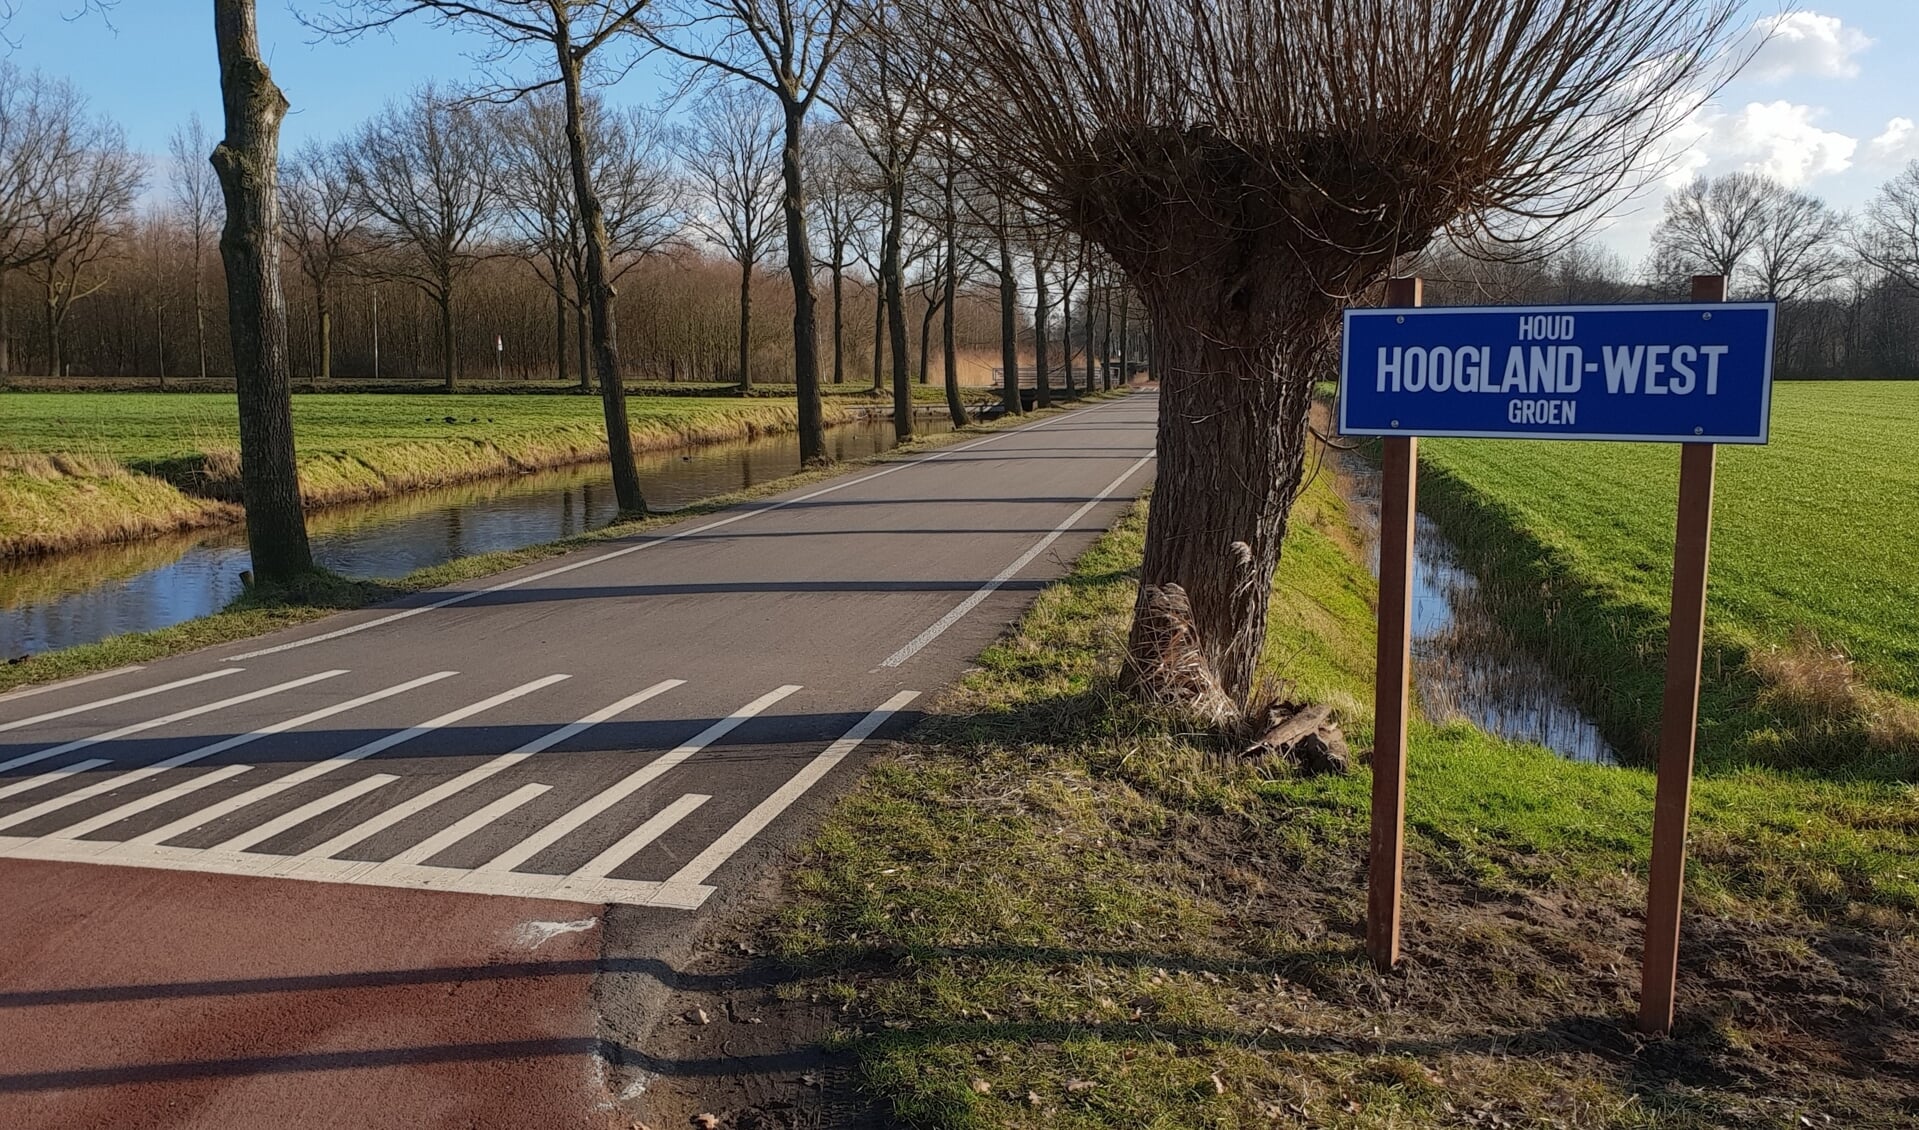 Plaats waar het bord stond (Malesluispad/Slaagseweg Hoogland-West